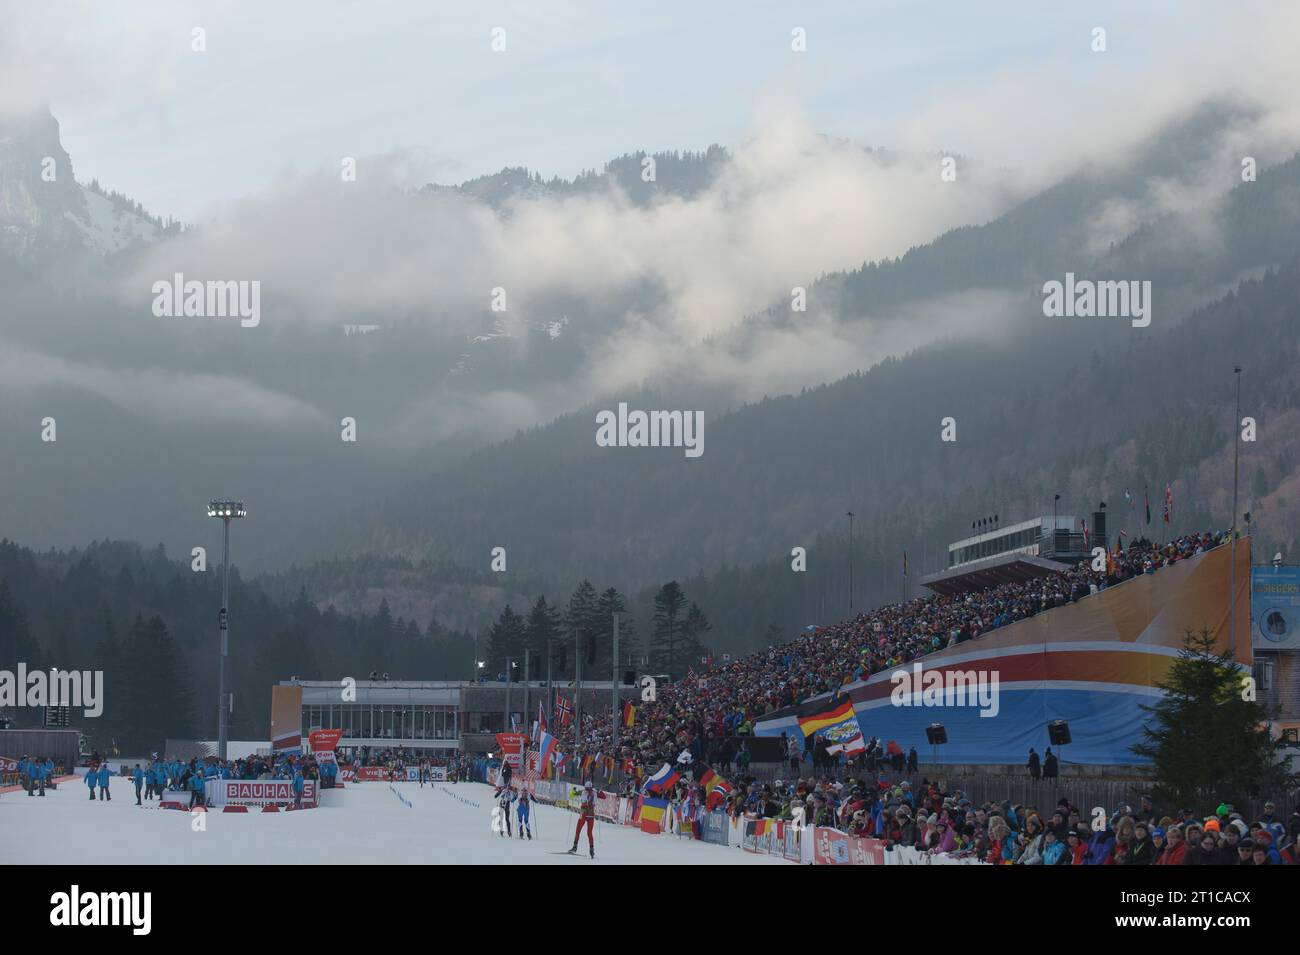 Uebersicht Biathlon Stadion in Ruhpolding Biathlon Welt Cup 12,5 KM Verfolgung der Herren in Ruhpolding, Deutschland am 12.01.2014 Stock Photo